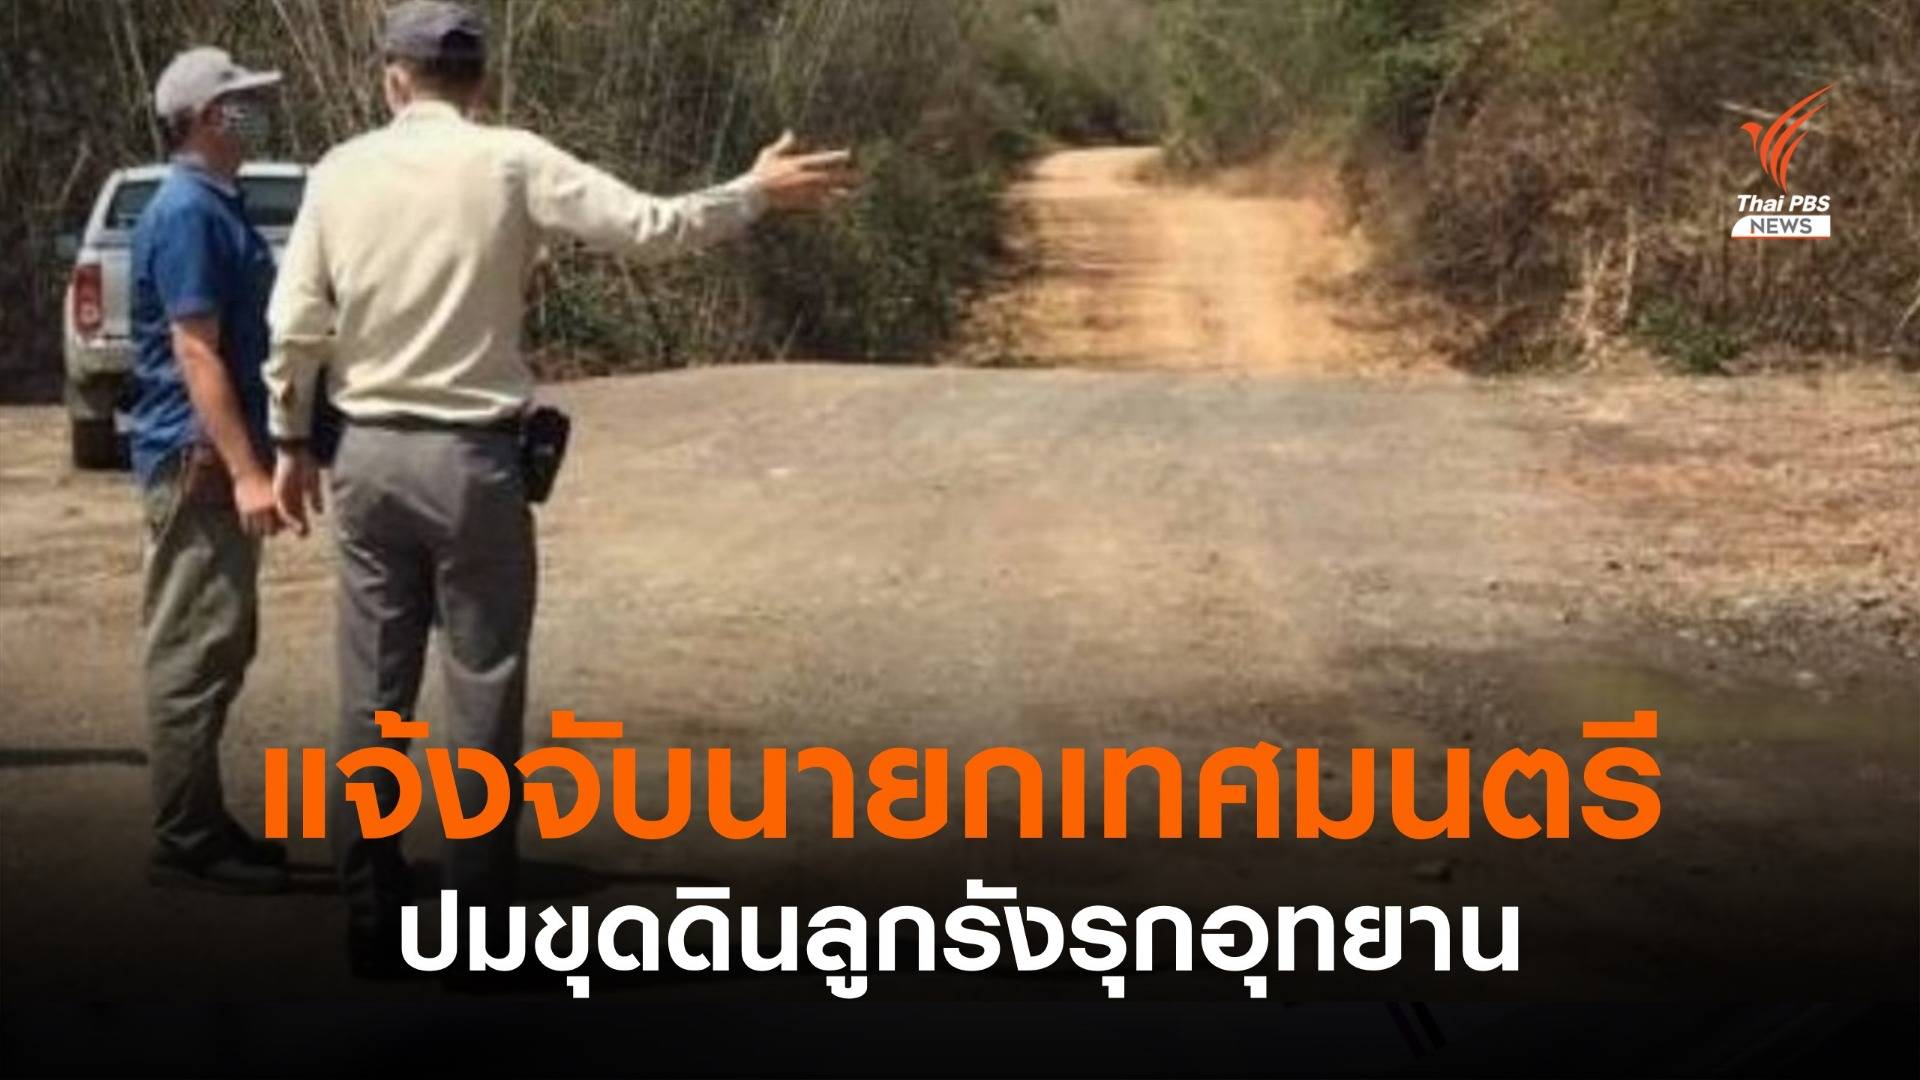 แจ้งจับนายกเทศมนตรี ปมขุดดินลูกรังรุกอุทยาน จ.กาญจนบุรี